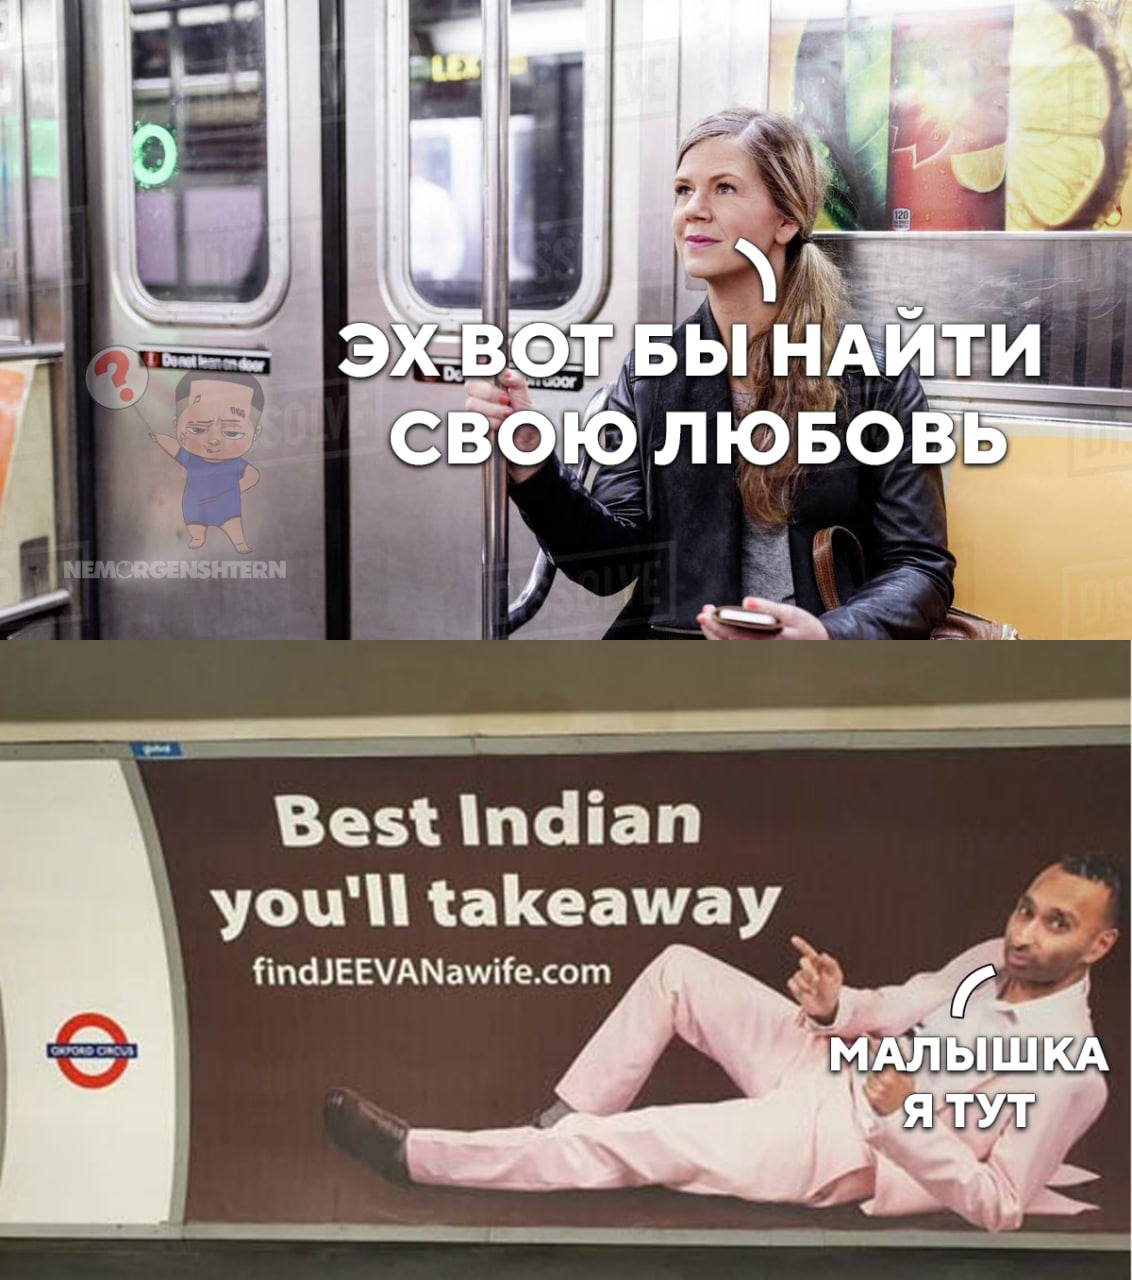 Поиски жены в лондонском метро